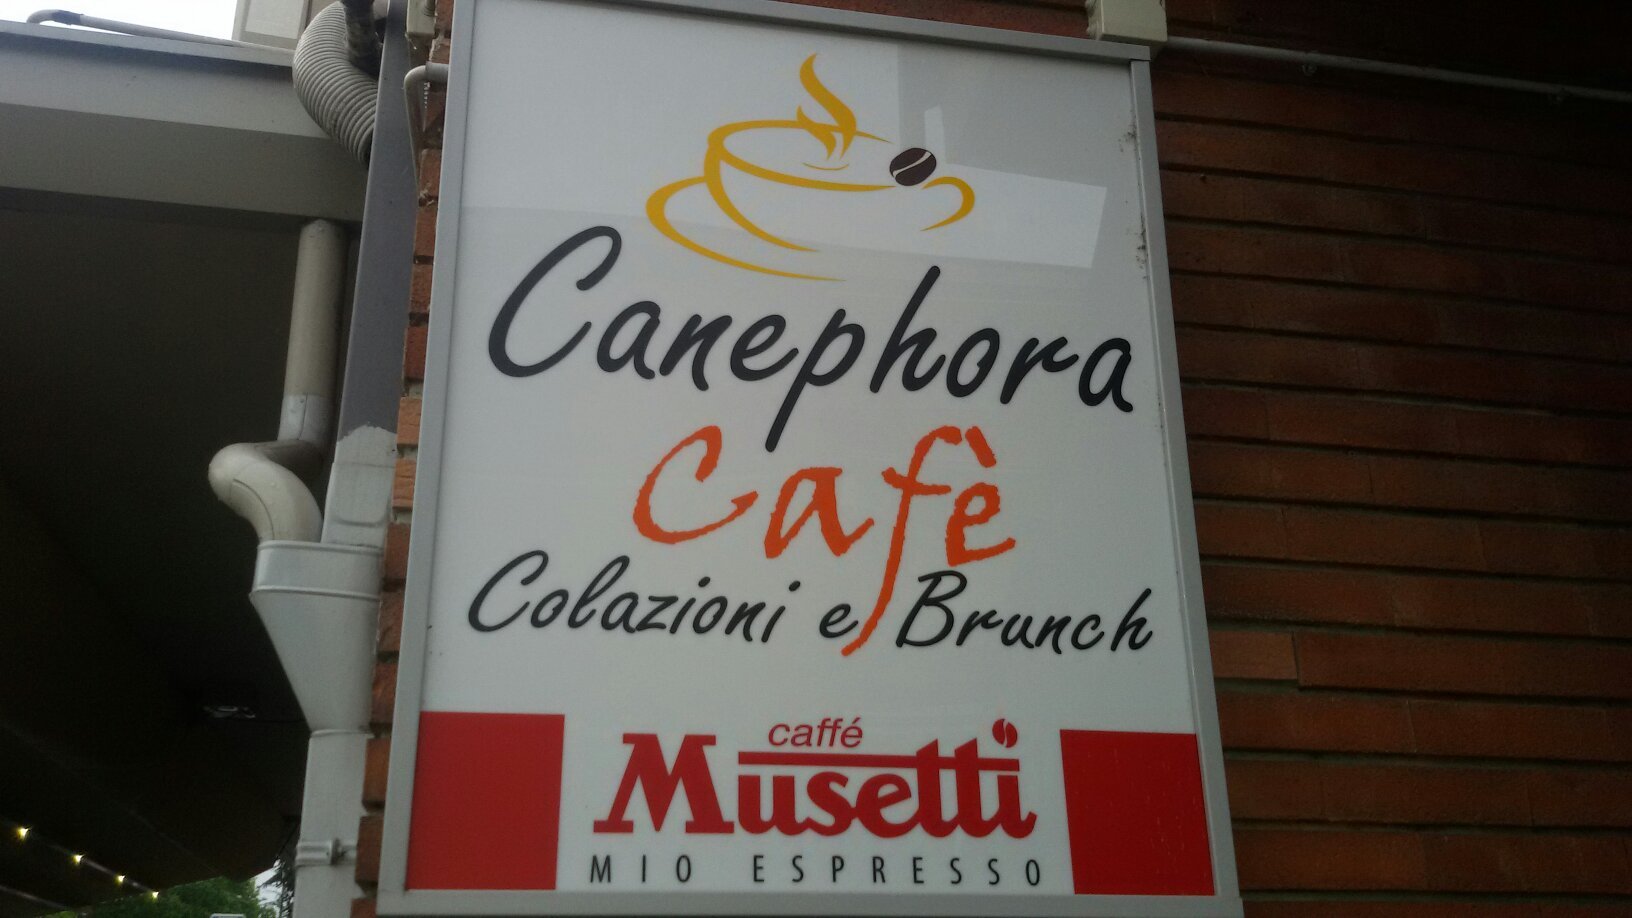 Canephora Cafe, Carpi